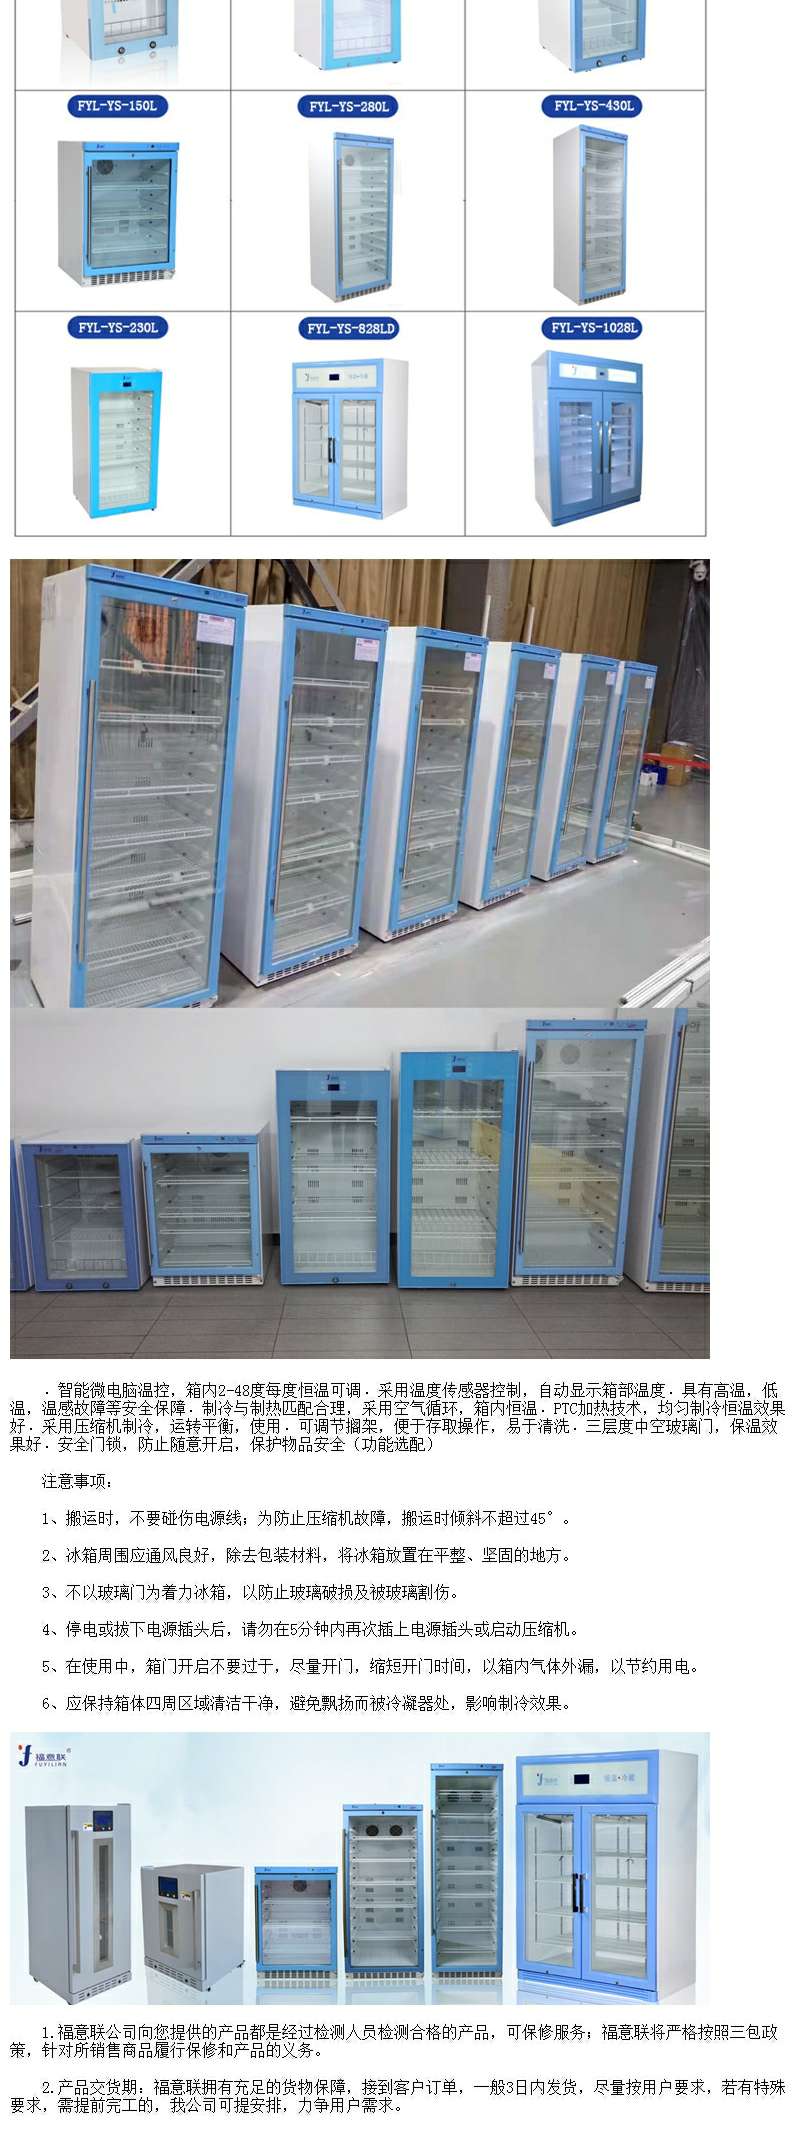 保冷柜i级保冷柜有效内容积大于70l温控范围-5度~-28度